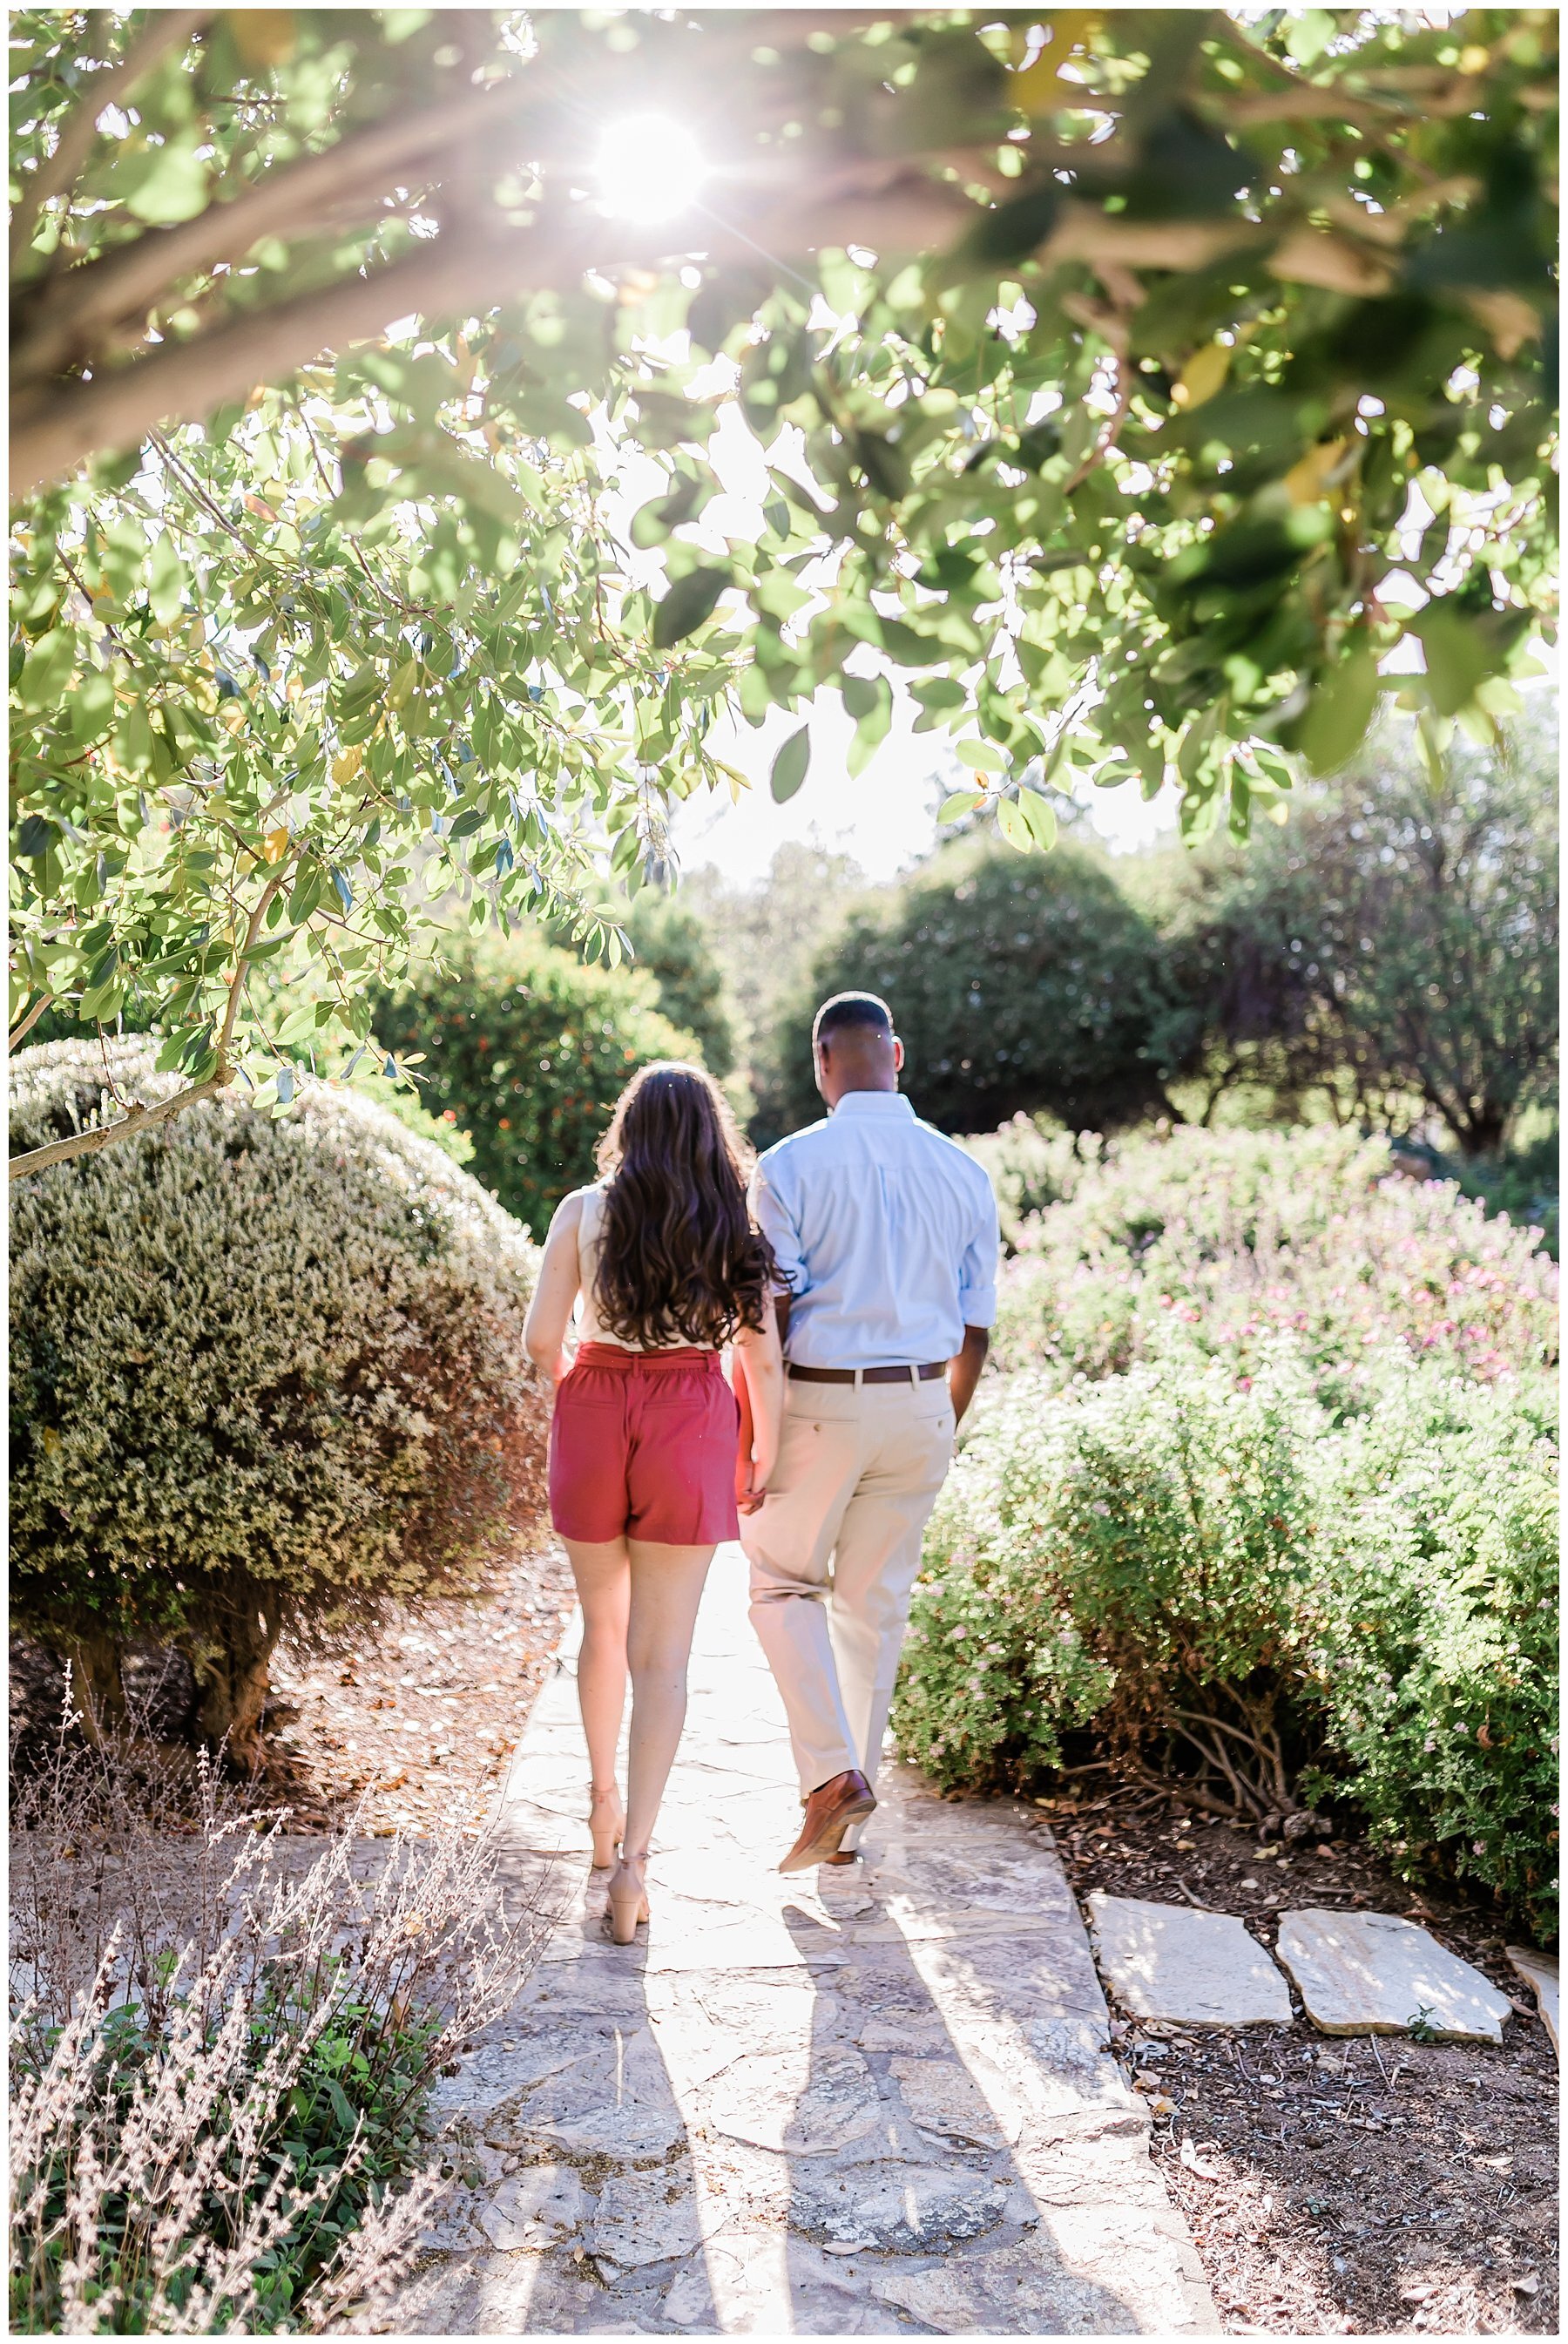  engaged couple walking through a garden 